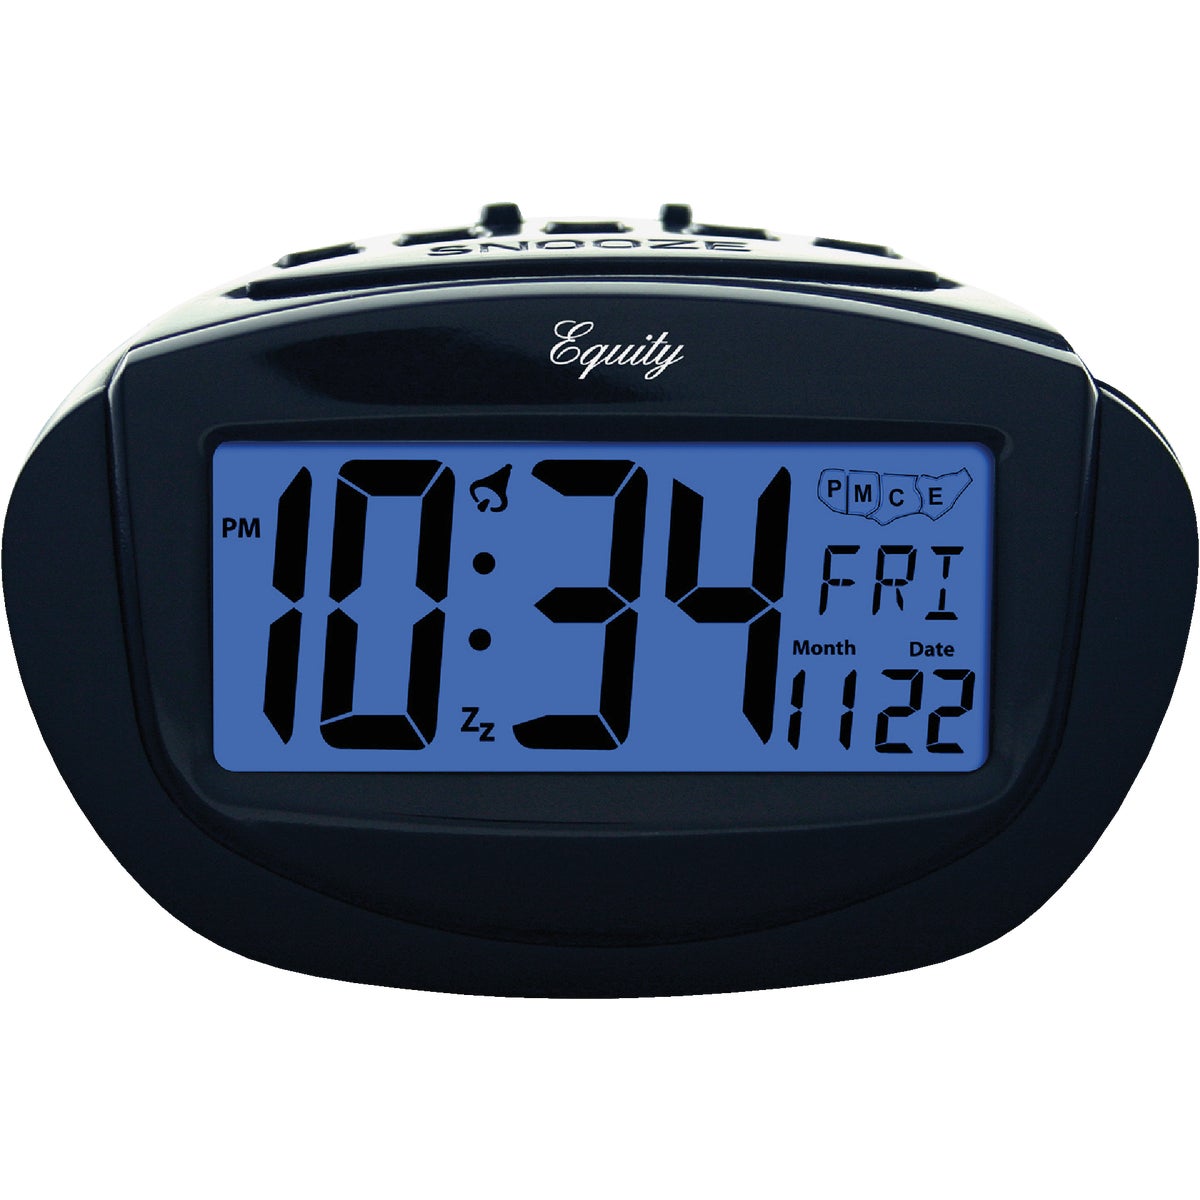 Item 663654, Digital alarm sets your time instantly.